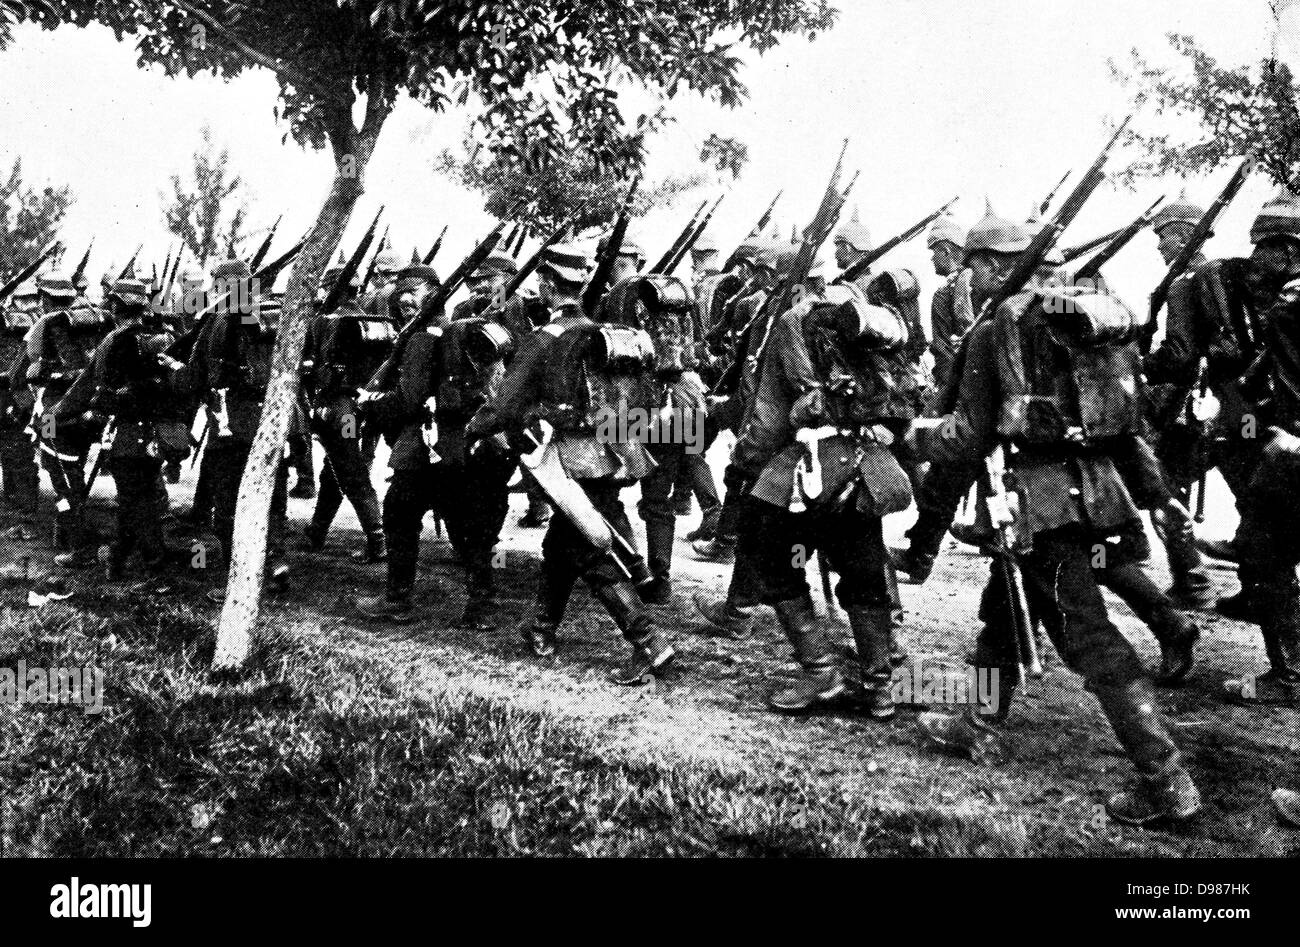 L'infanterie allemande sur le mars. Banque D'Images